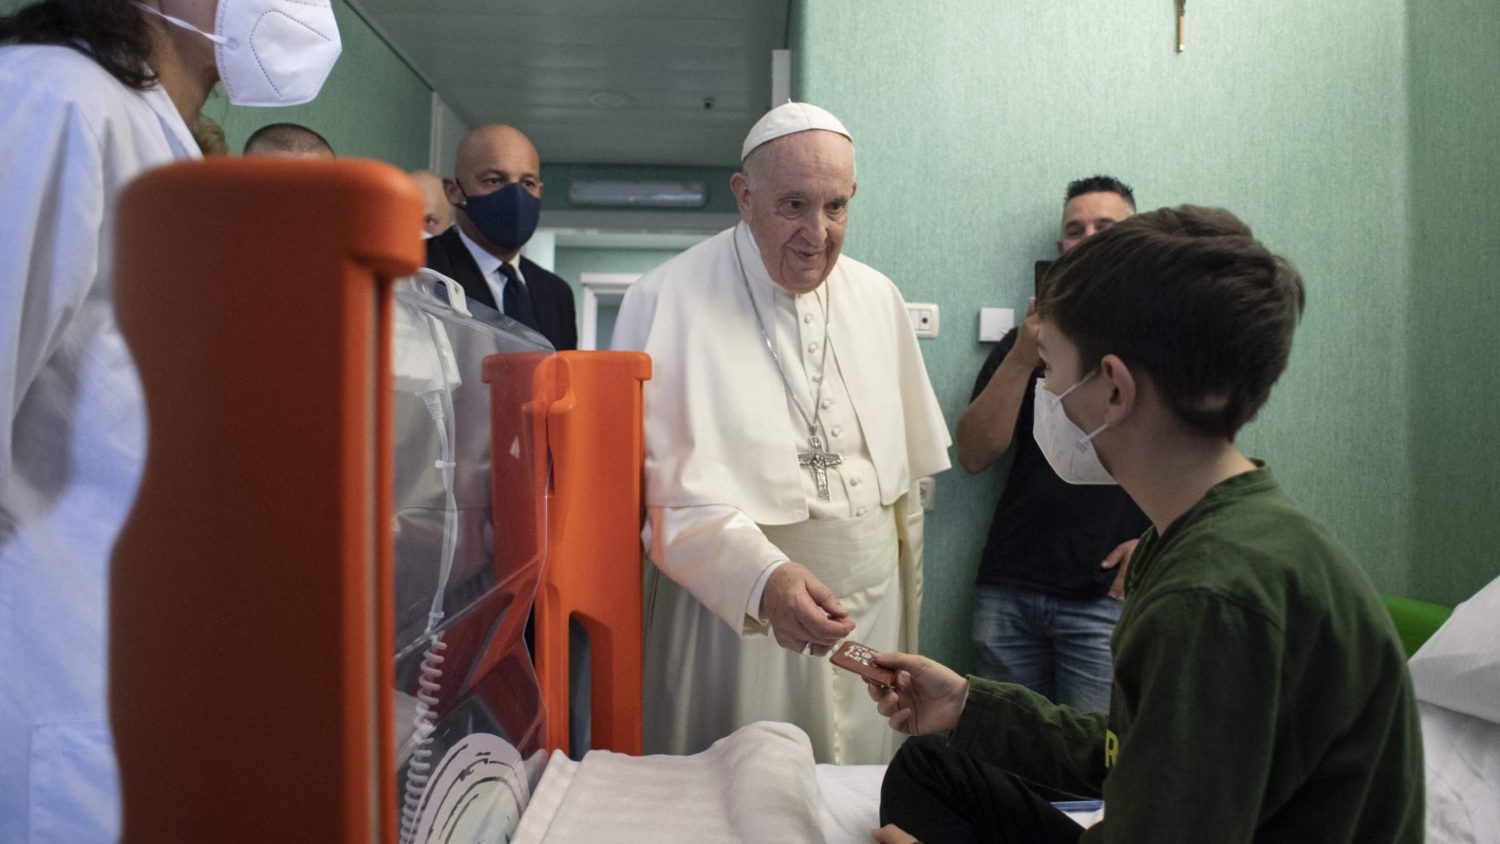 Папа навестил украинских детей в больнице «Бамбино Джезу» (ФОТО)